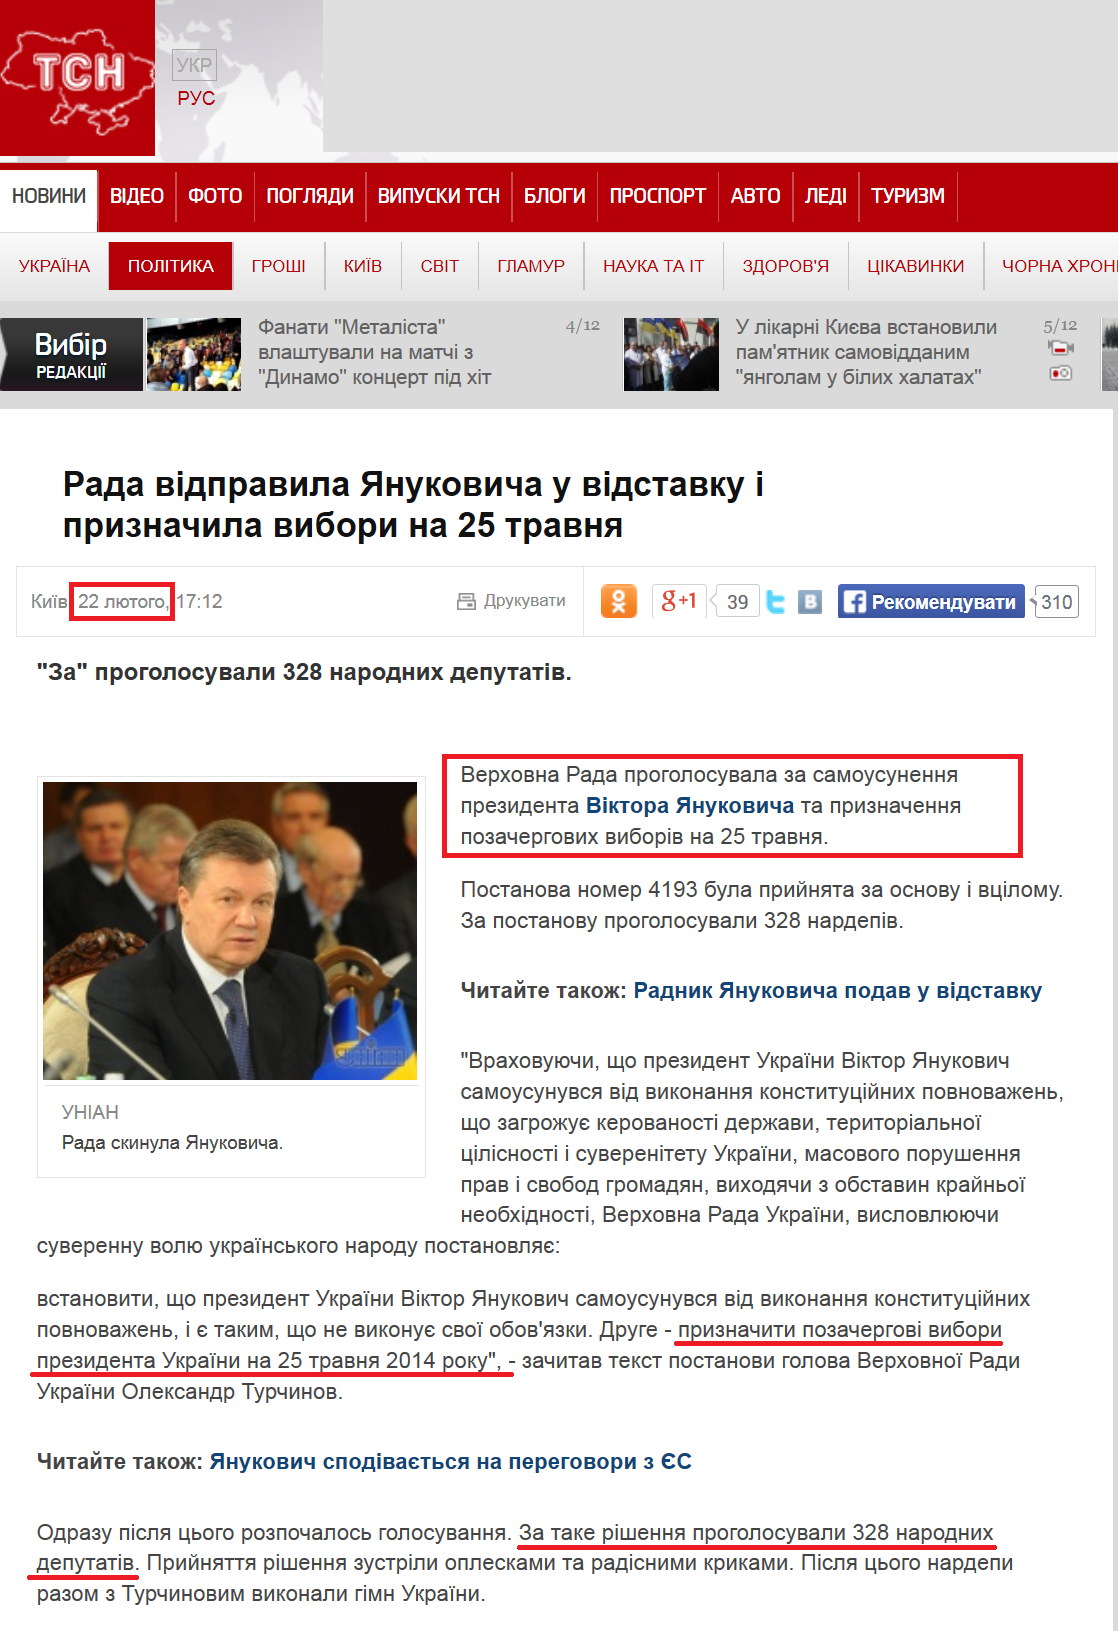 http://tsn.ua/politika/rada-skinula-yanukovicha-i-priznachela-pozachergovi-vibori-336048.html